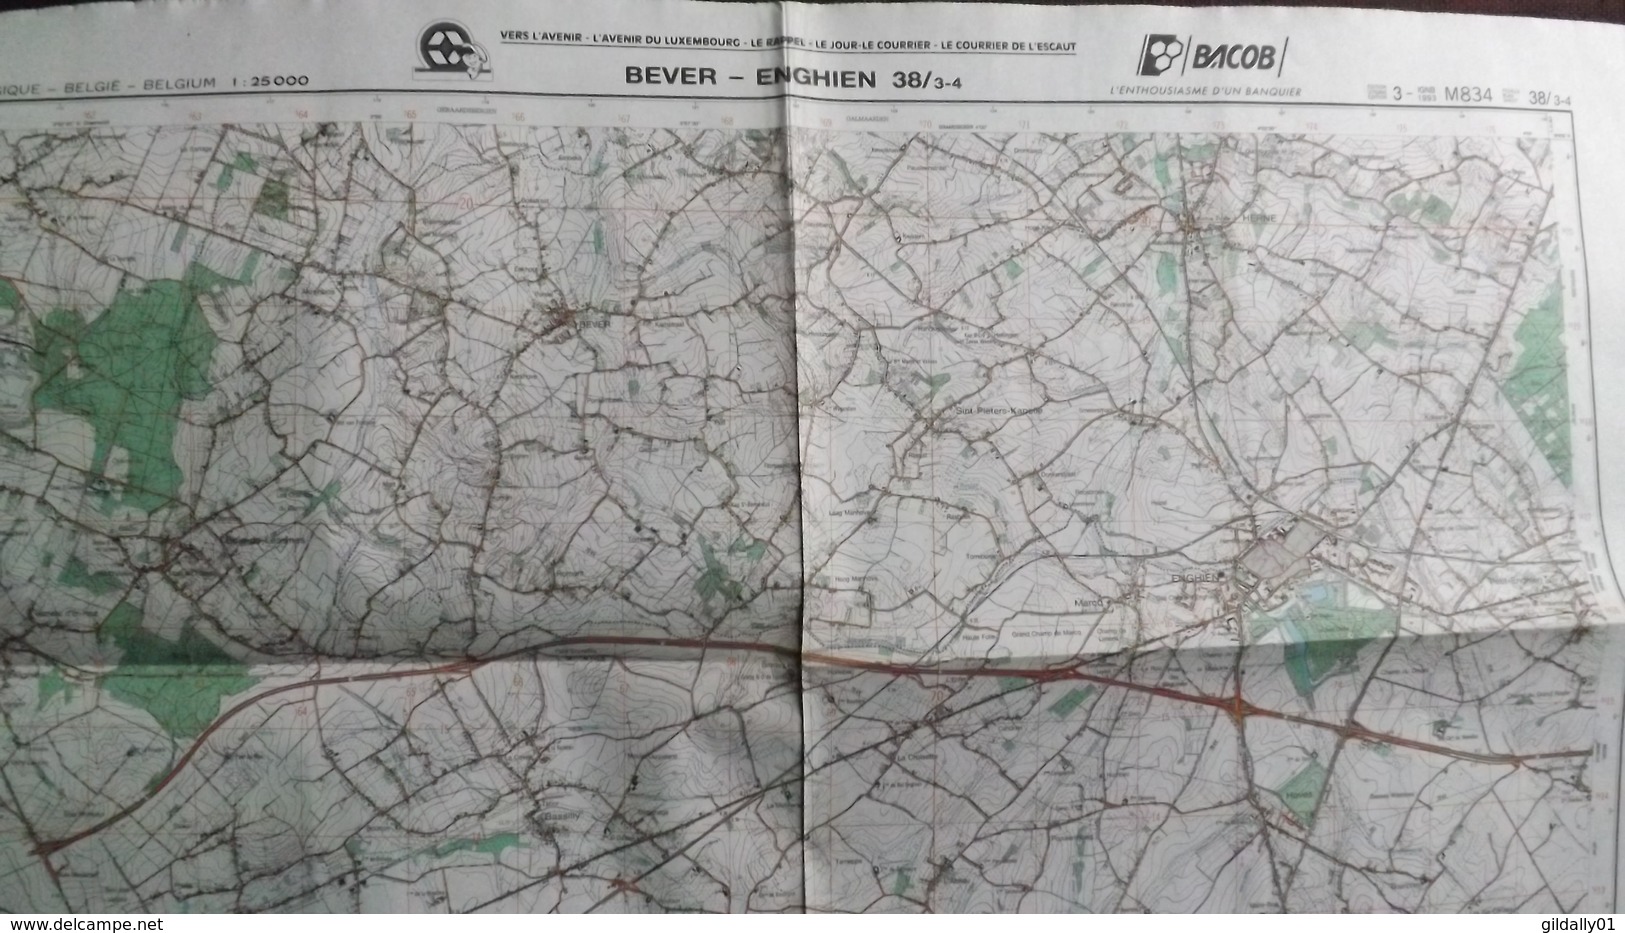 Plan-IGN BELGIQUE   *BEVER - ENGHIEN*   38/3-4.  M834.  1993 - Cartes Géographiques